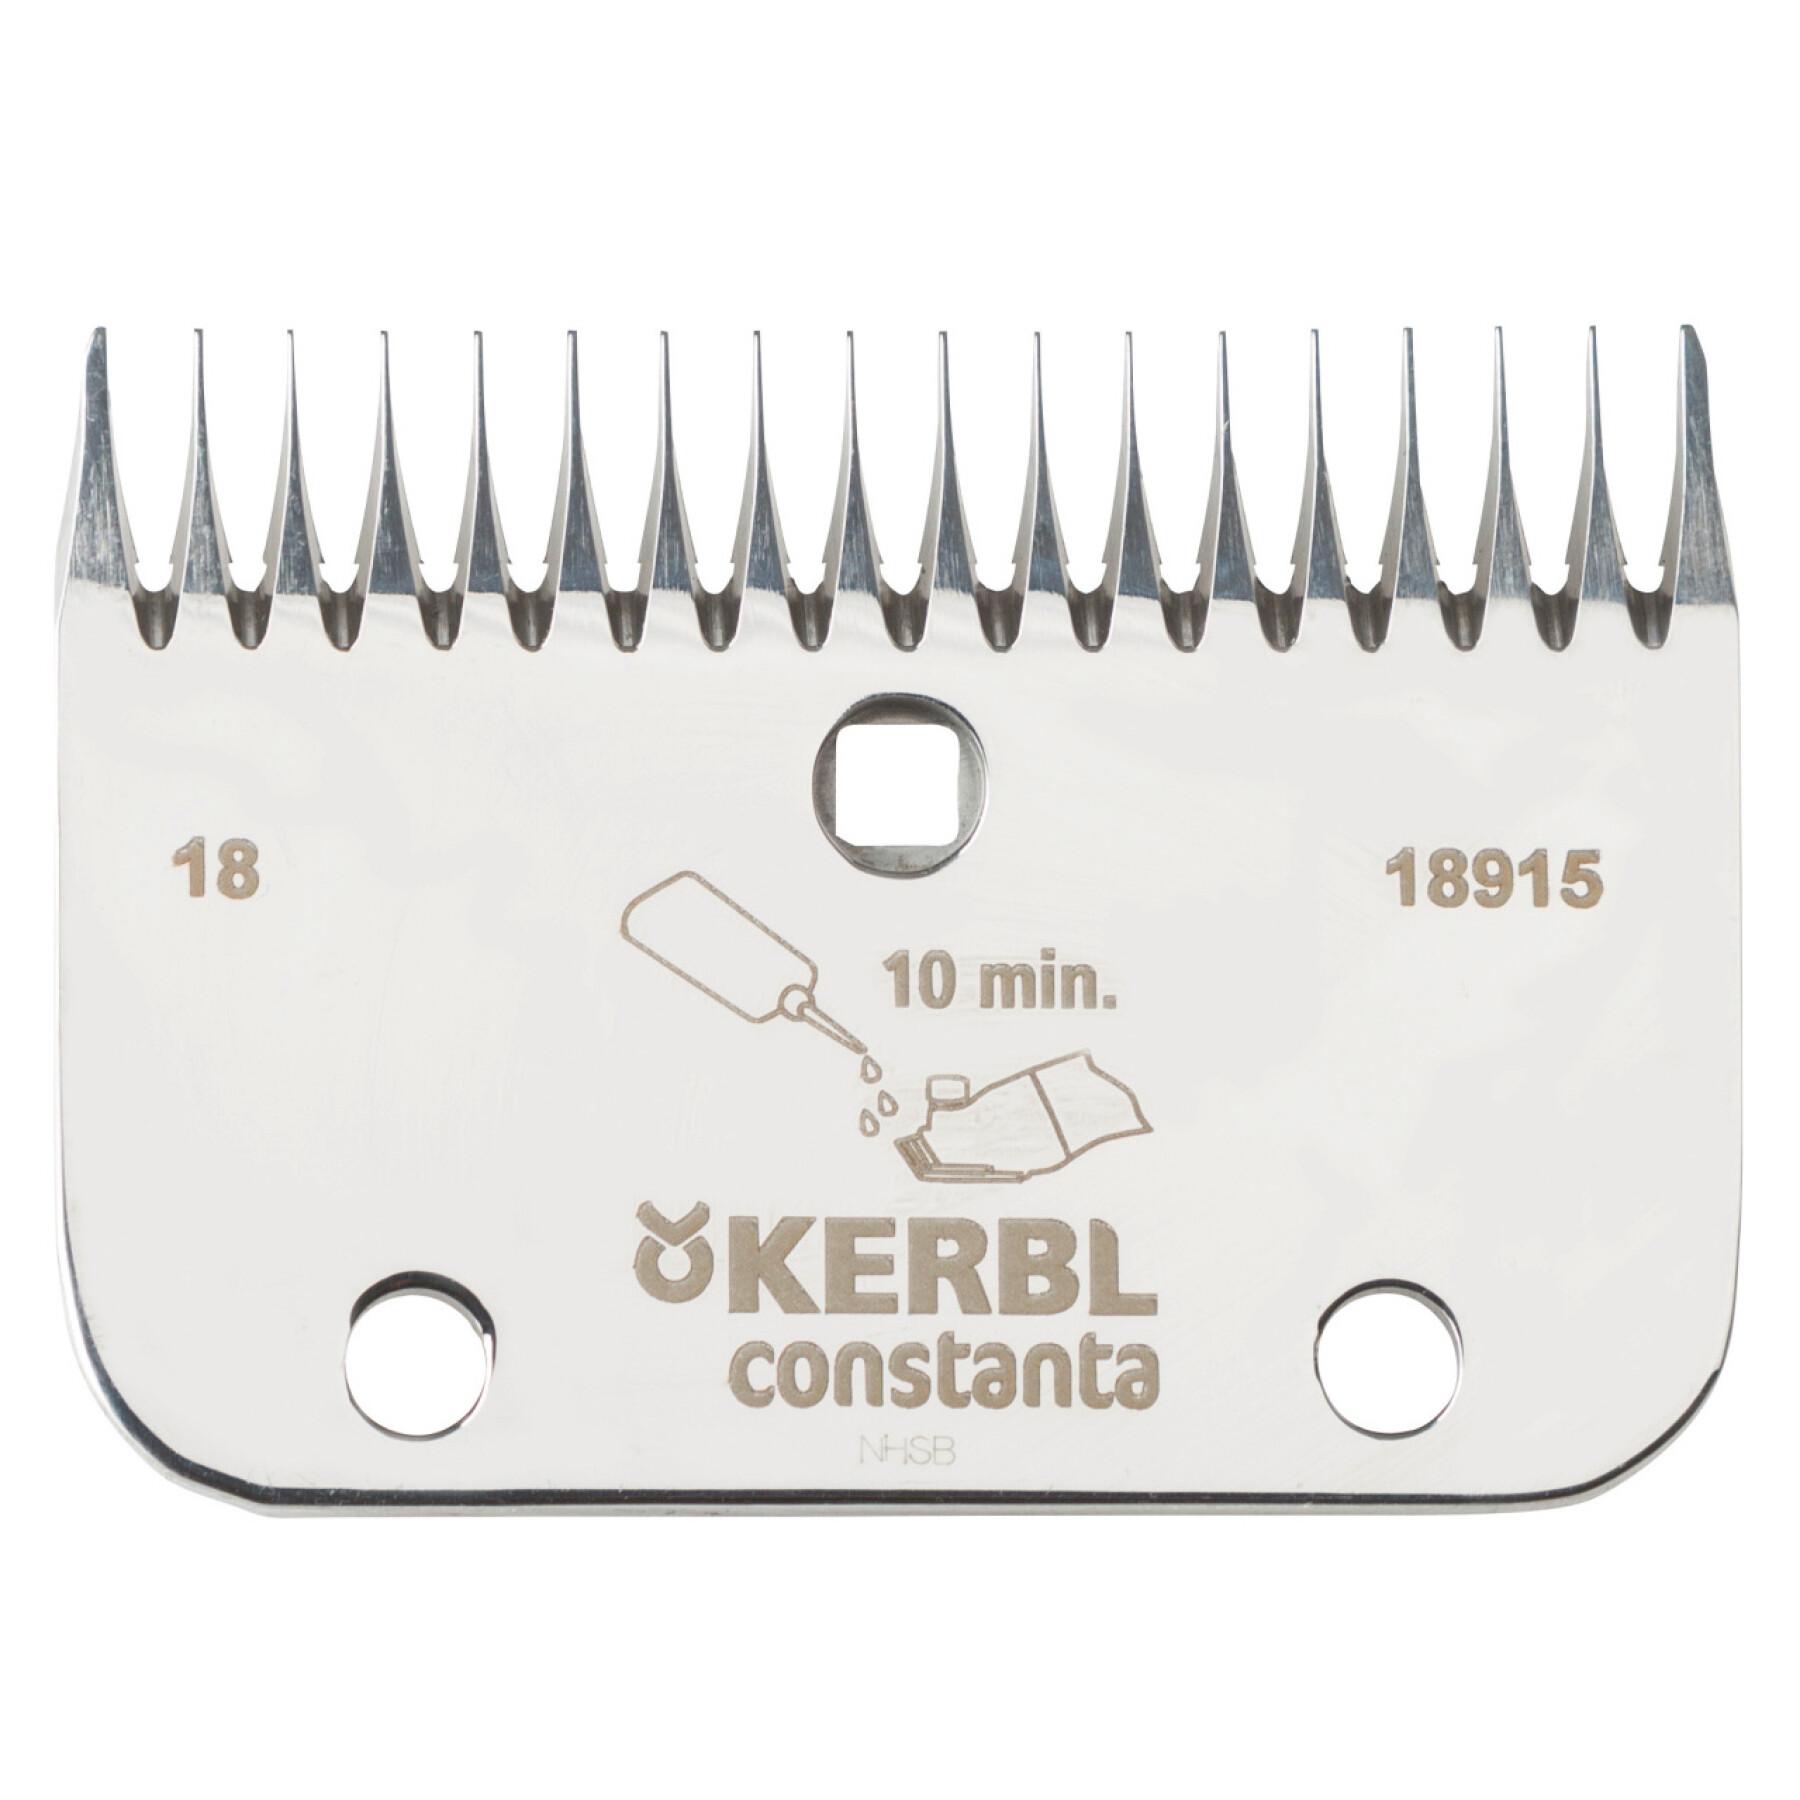 Peine para cortacésped 18/24 dientes Kerbl Constanta R6